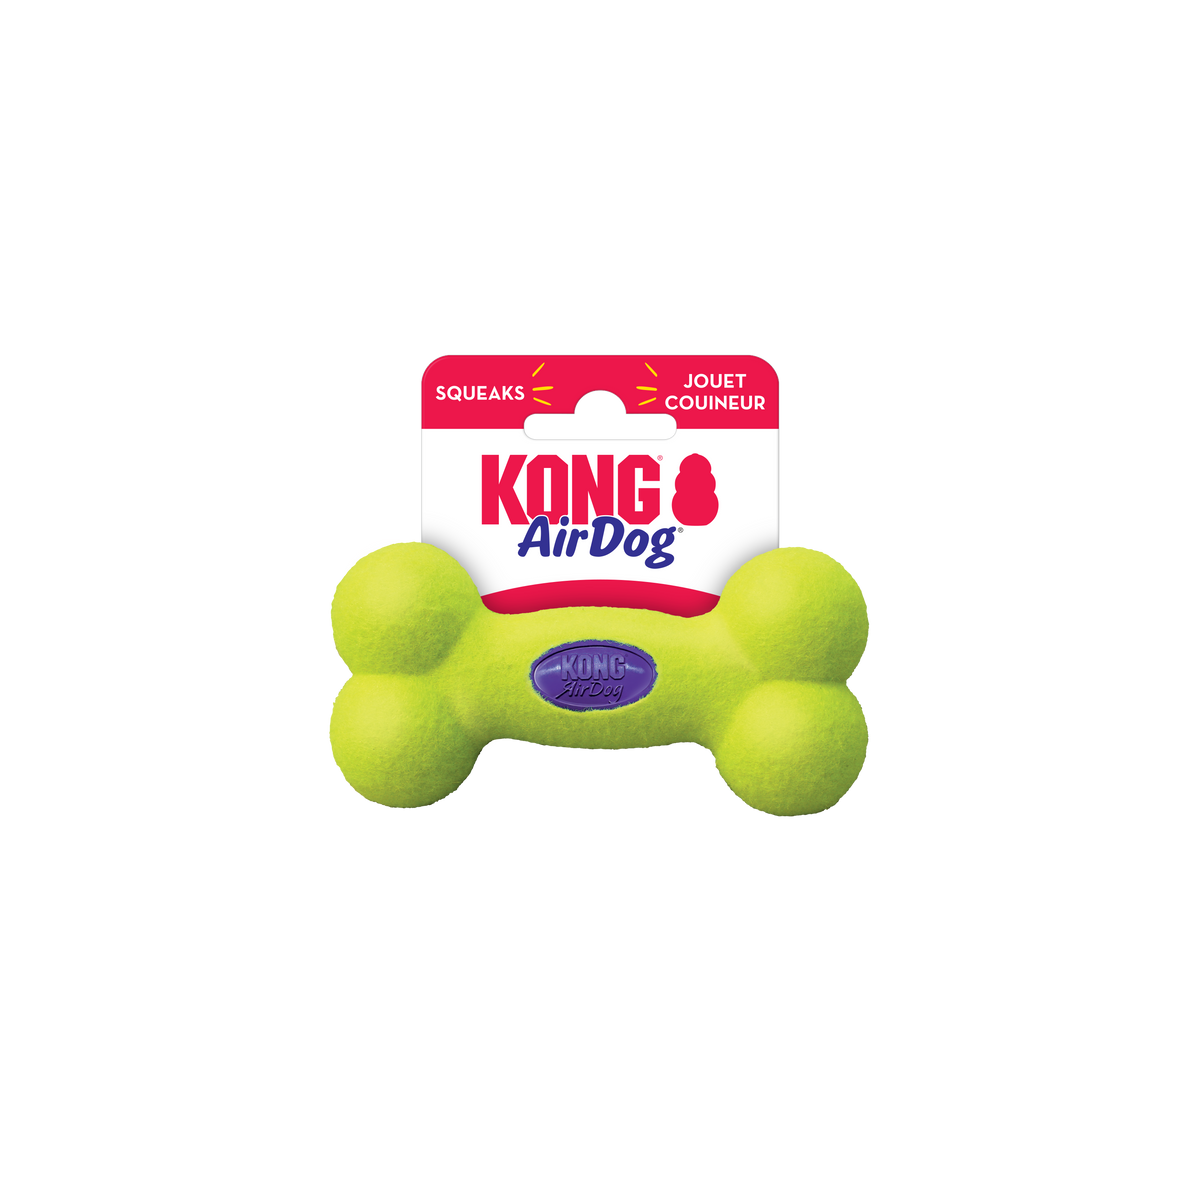 KONG AirDog® Squeaker Bone Dog Toy